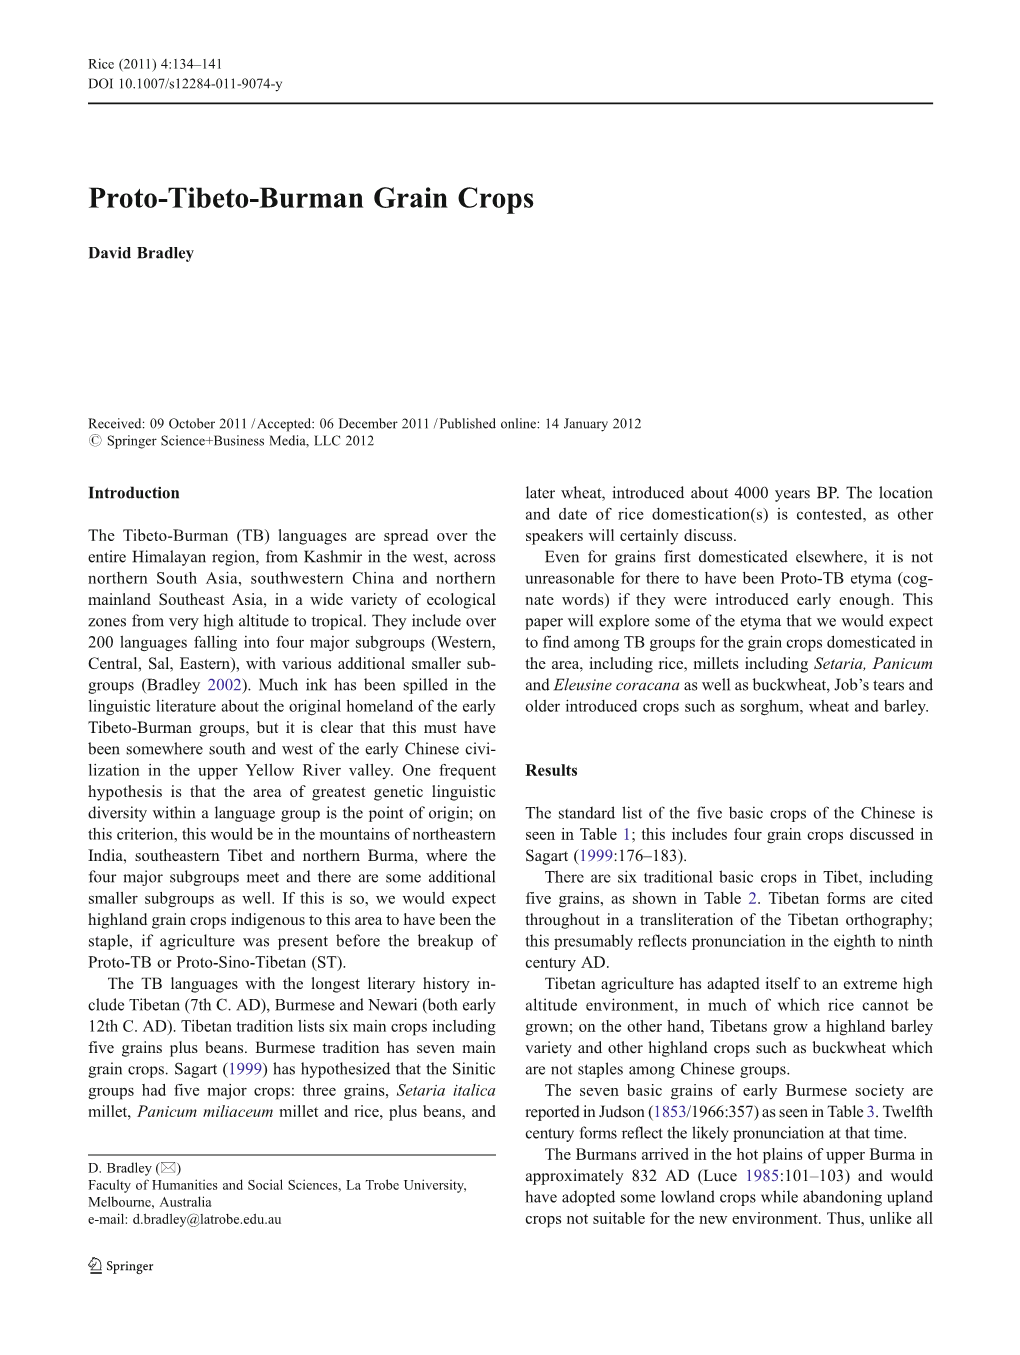 Proto-Tibeto-Burman Grain Crops